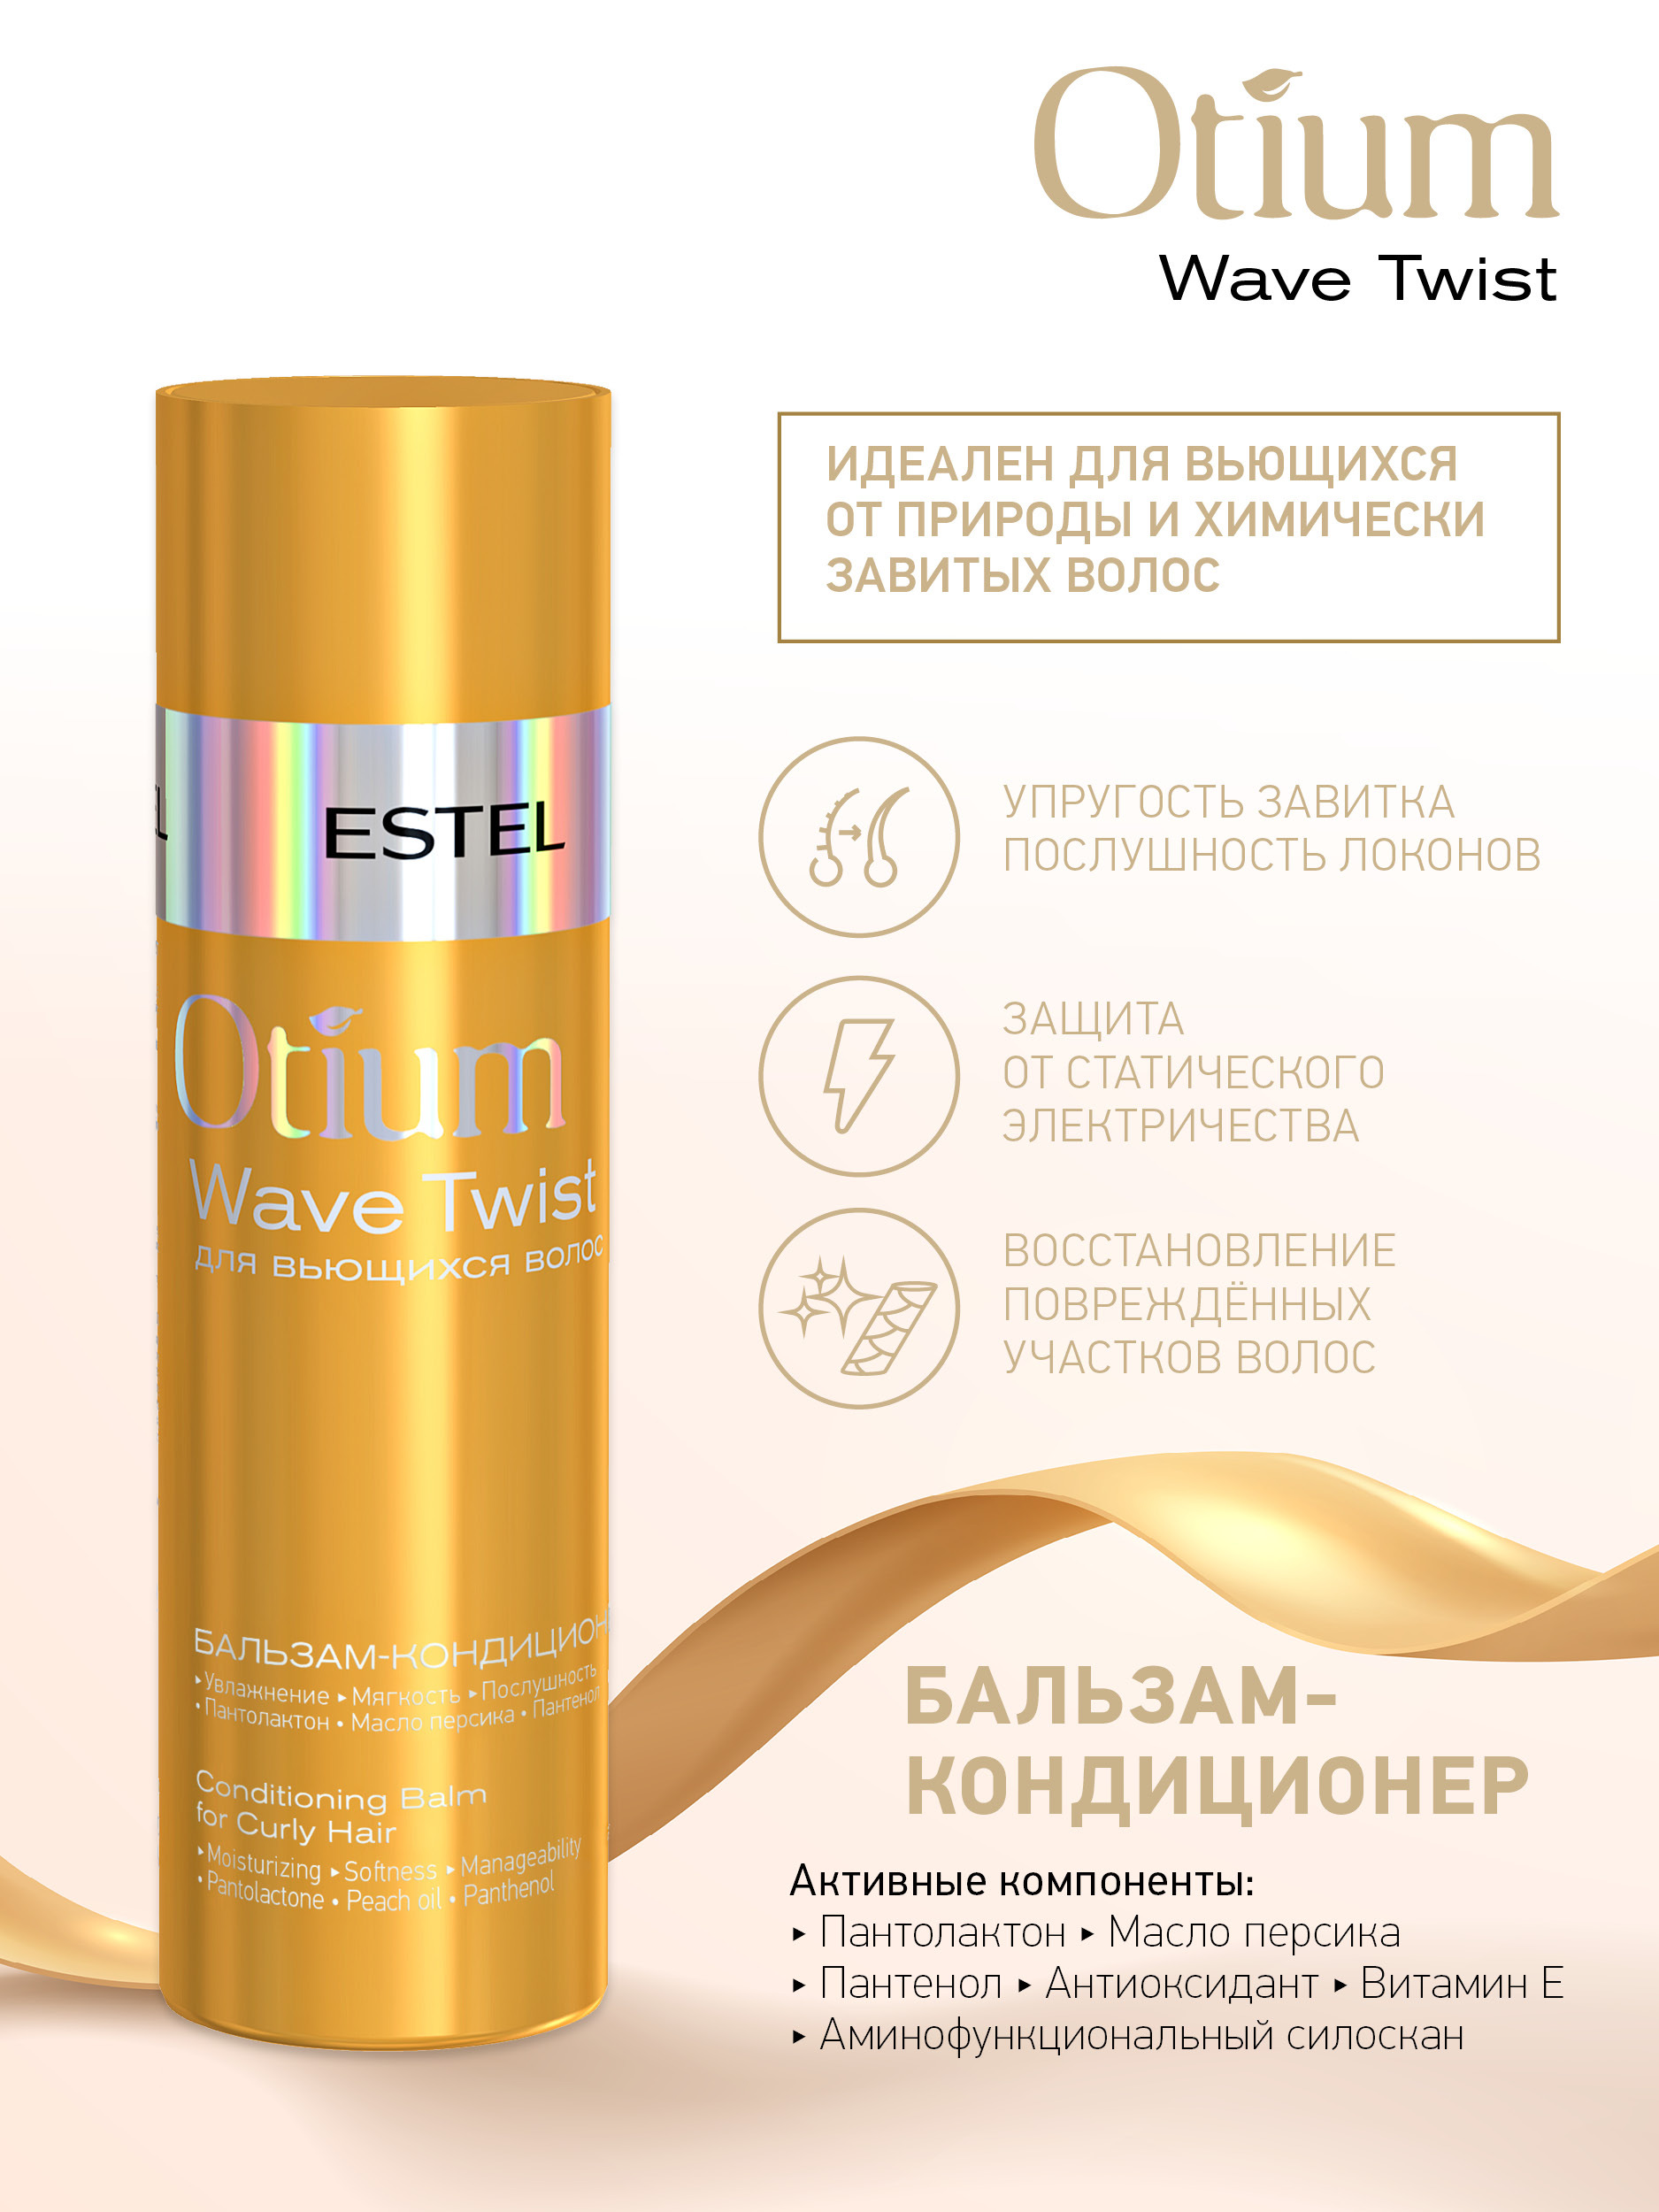 Набор Otium Wave Twist для вьющихся волос. Набор для вьющихся волос Otium Wave Twist- Estel professional. Крем-шампунь для вьющихся волос Otium Wave Twist. Estel Otium Wave Twist крем шампунь для вьющихся.